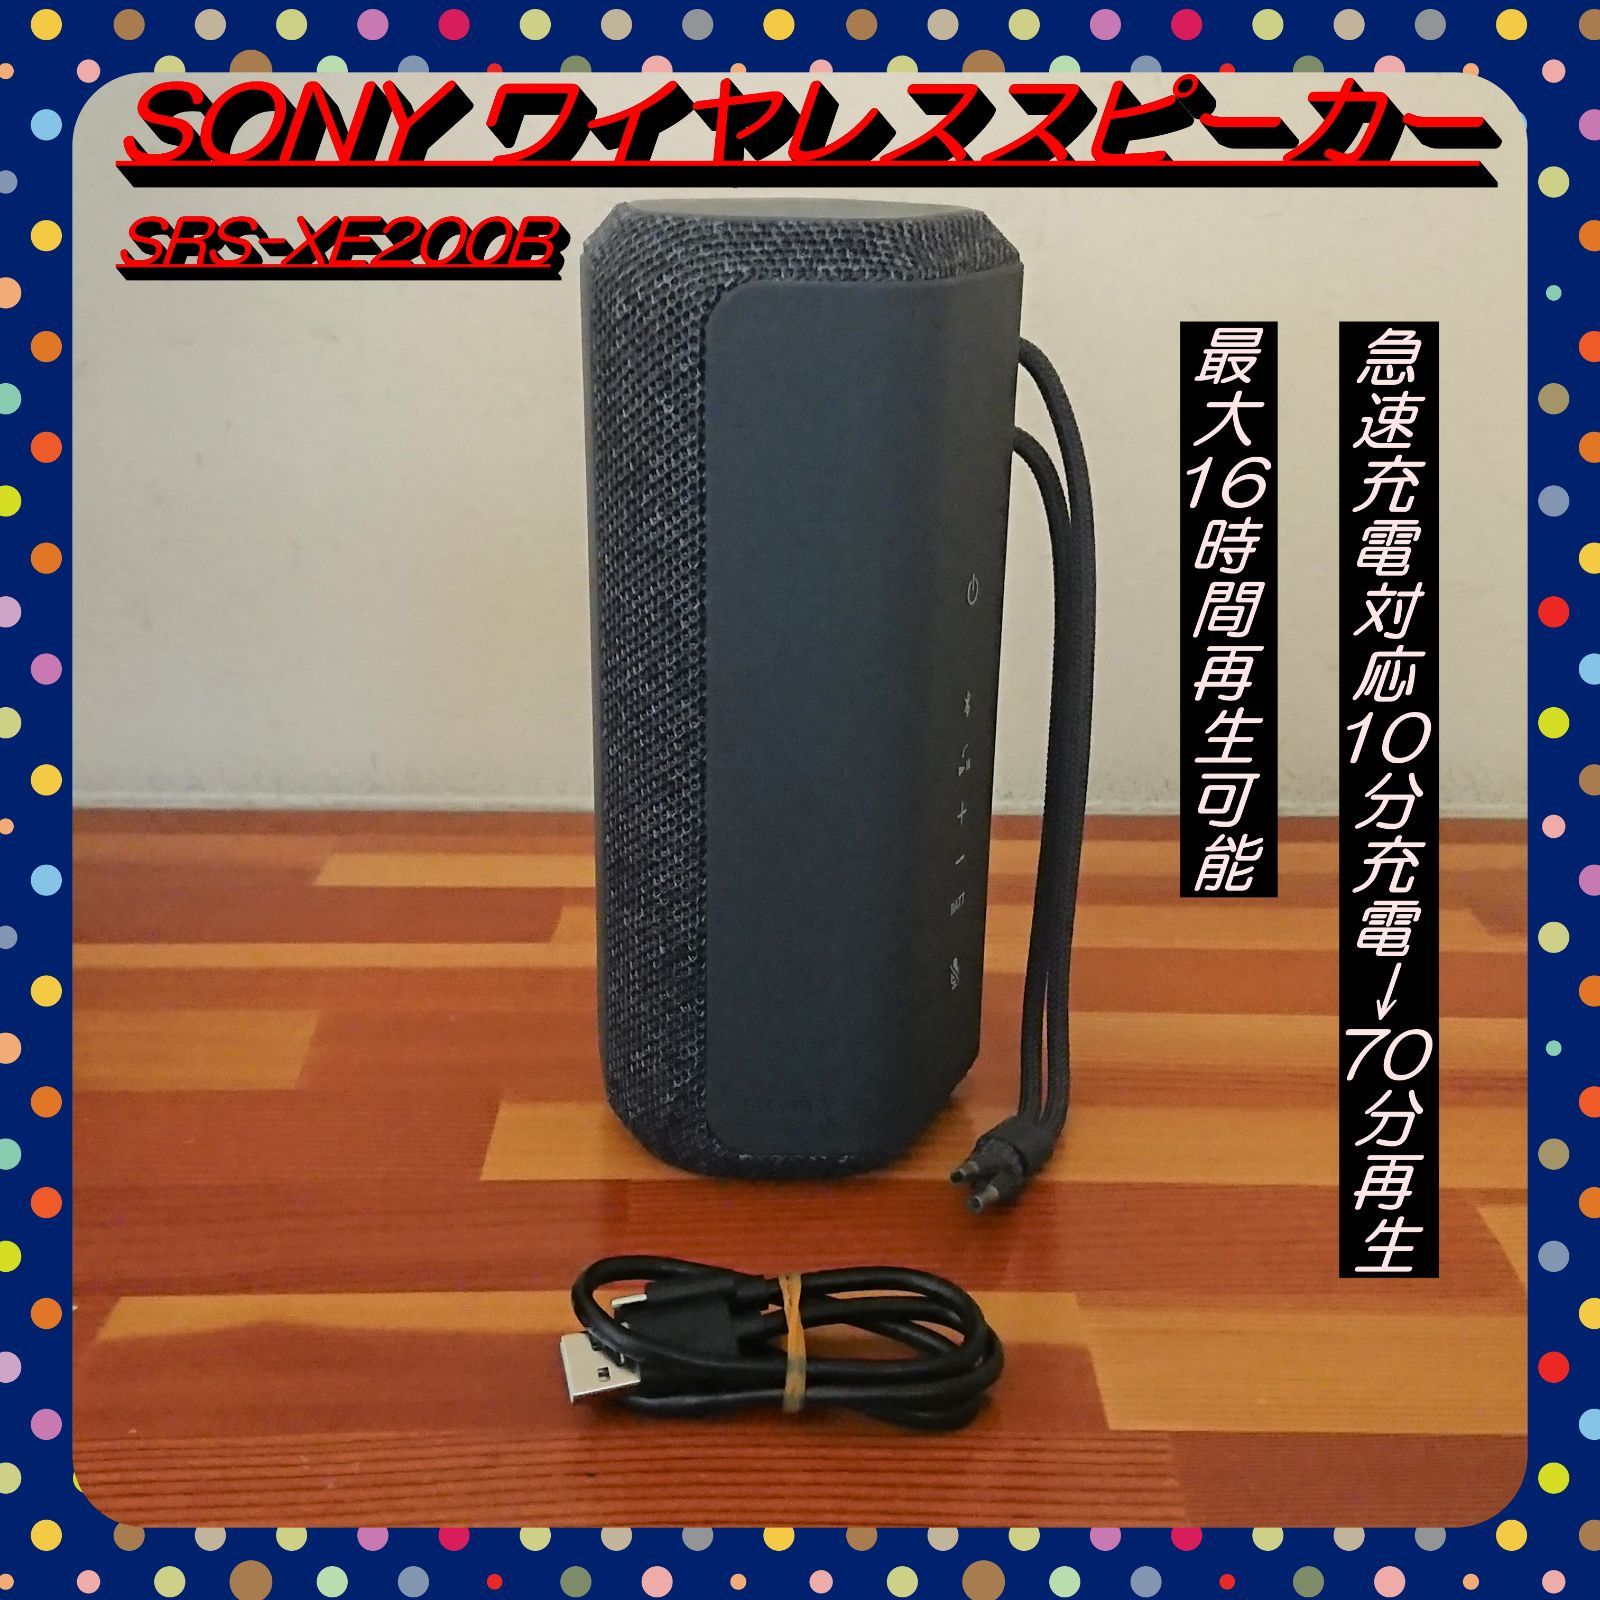 大処分特価!!】SONY SRS-XE200 ワイヤレススピーカー ブラック